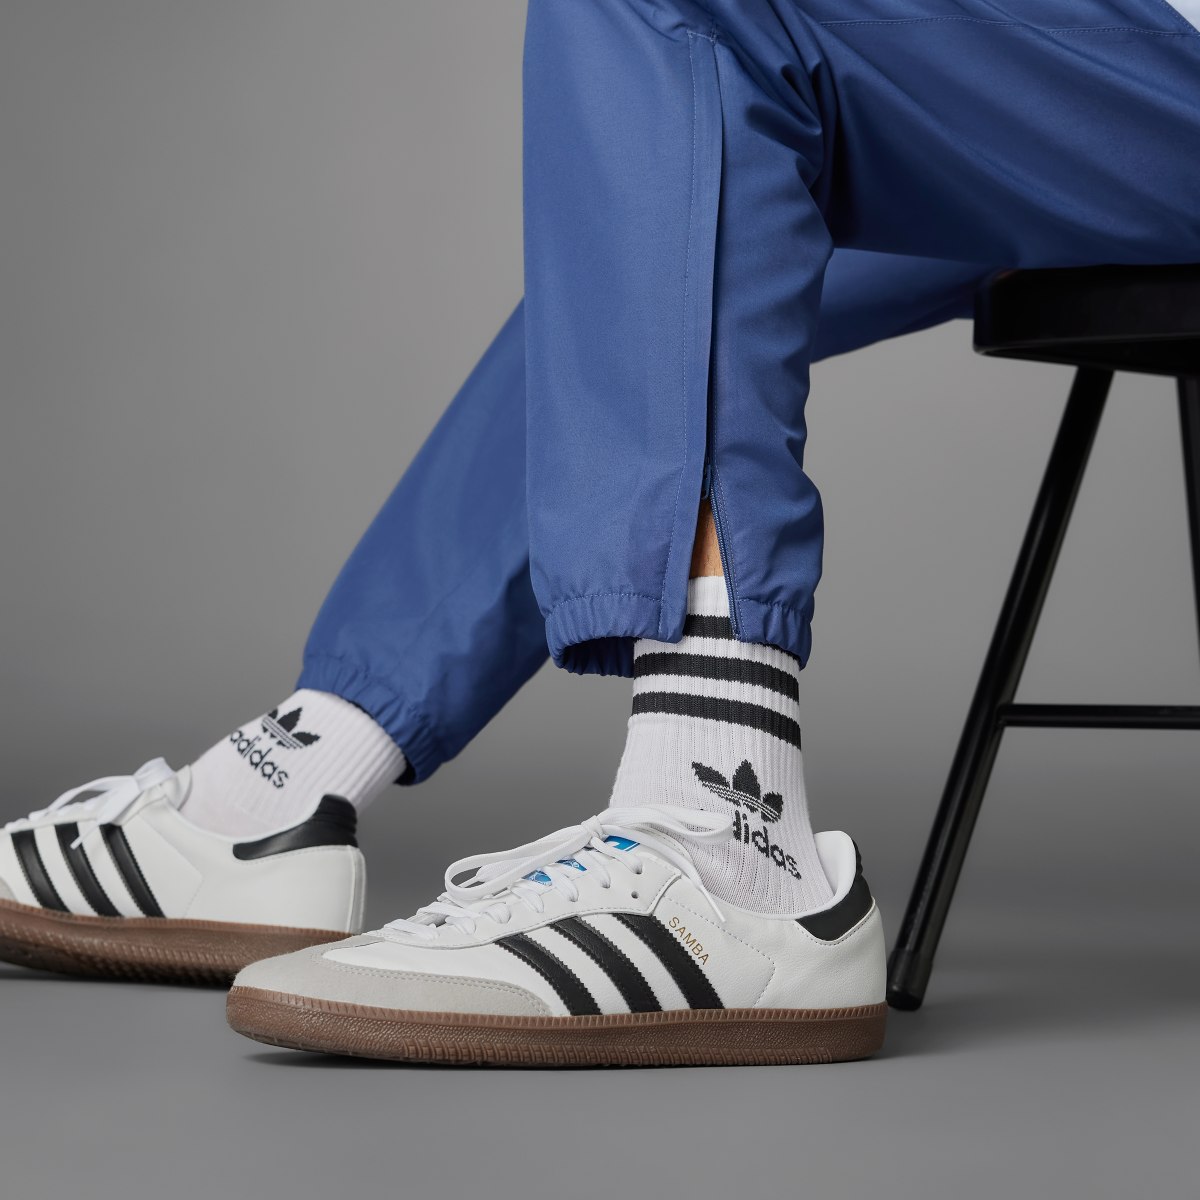 Adidas Spodnie dresowe Argentina 1994 Woven. 7